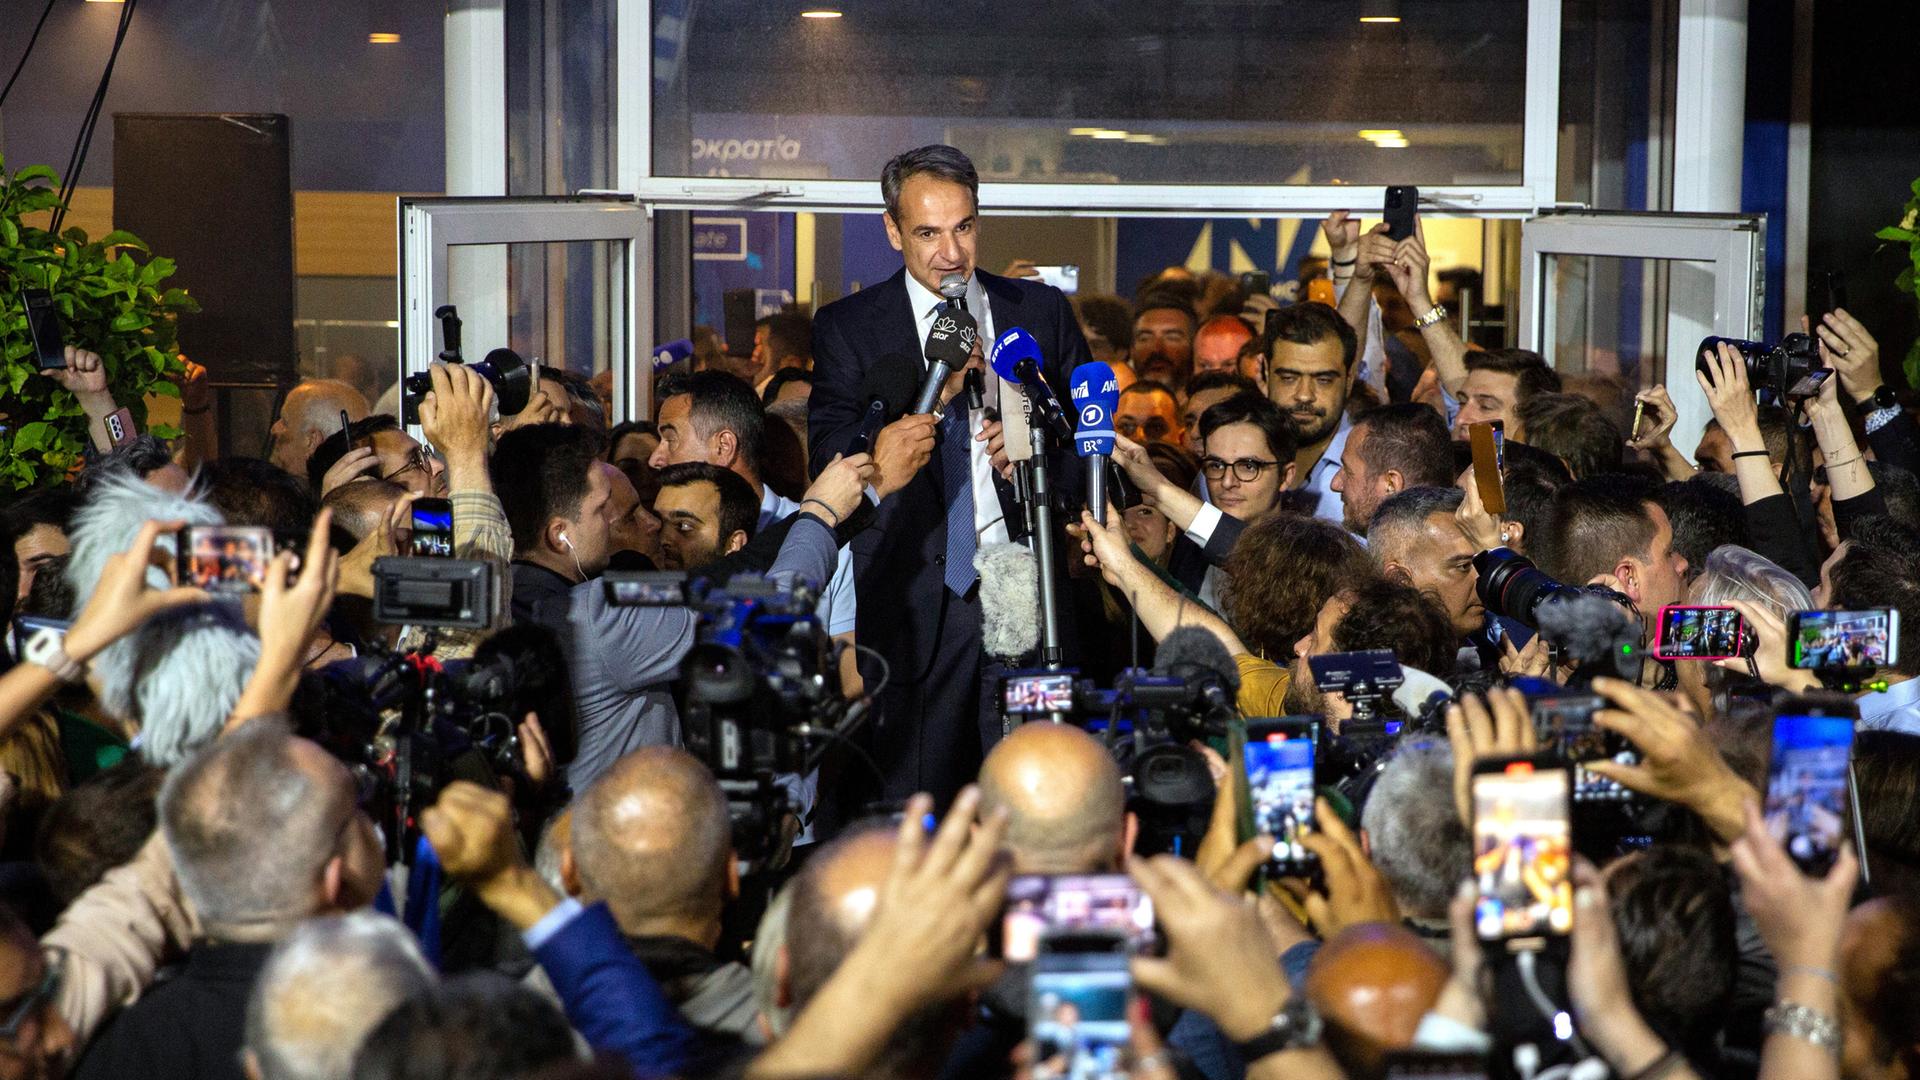 Kyriakos Mitsotakis, griechischer Ministerpräsident und Vorsitzender der Nea Dimokratia, vor der Parteizentrale in Athen. Er steht erhöht und spricht zu zahlreichen Journalisten, die Kameras und Mikrofone auf ihn richten.